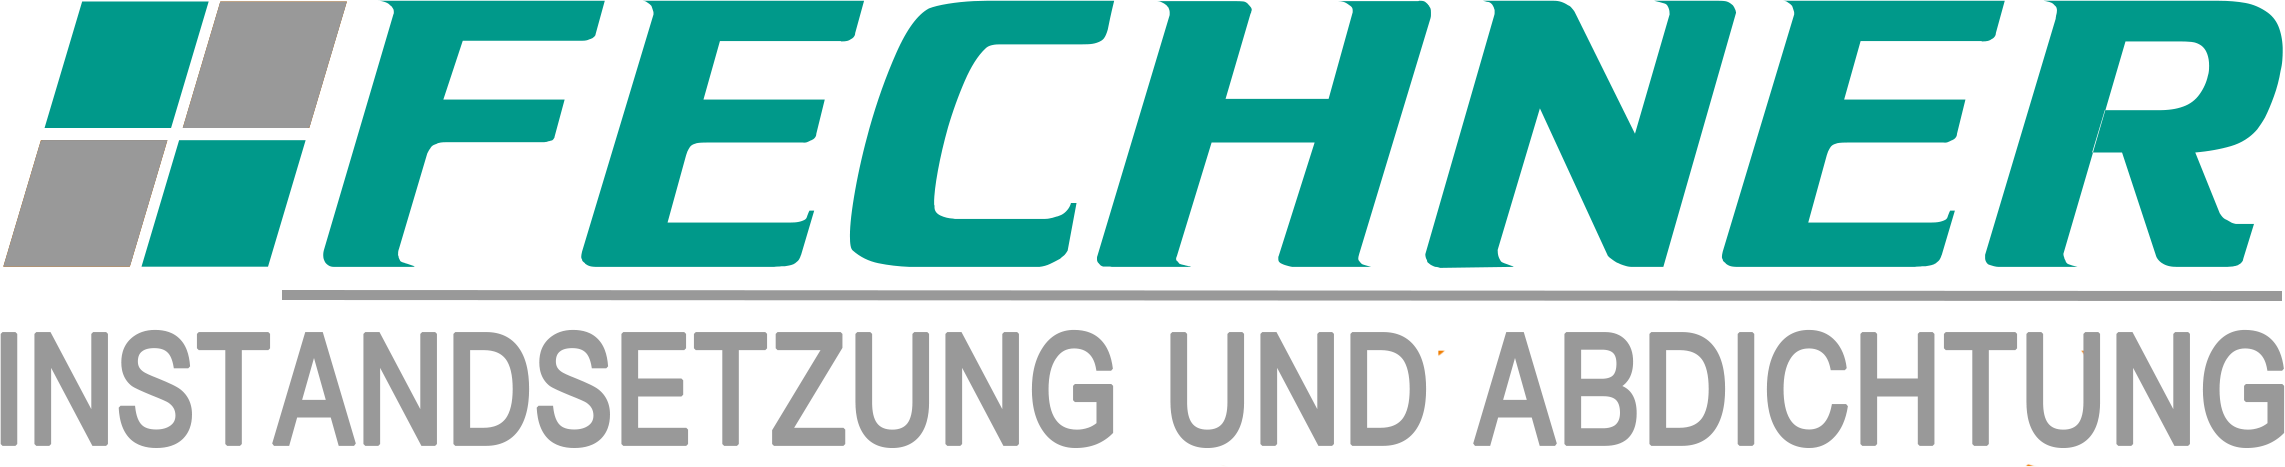 Fechner Instandsetzung und Abdichtung GmbH